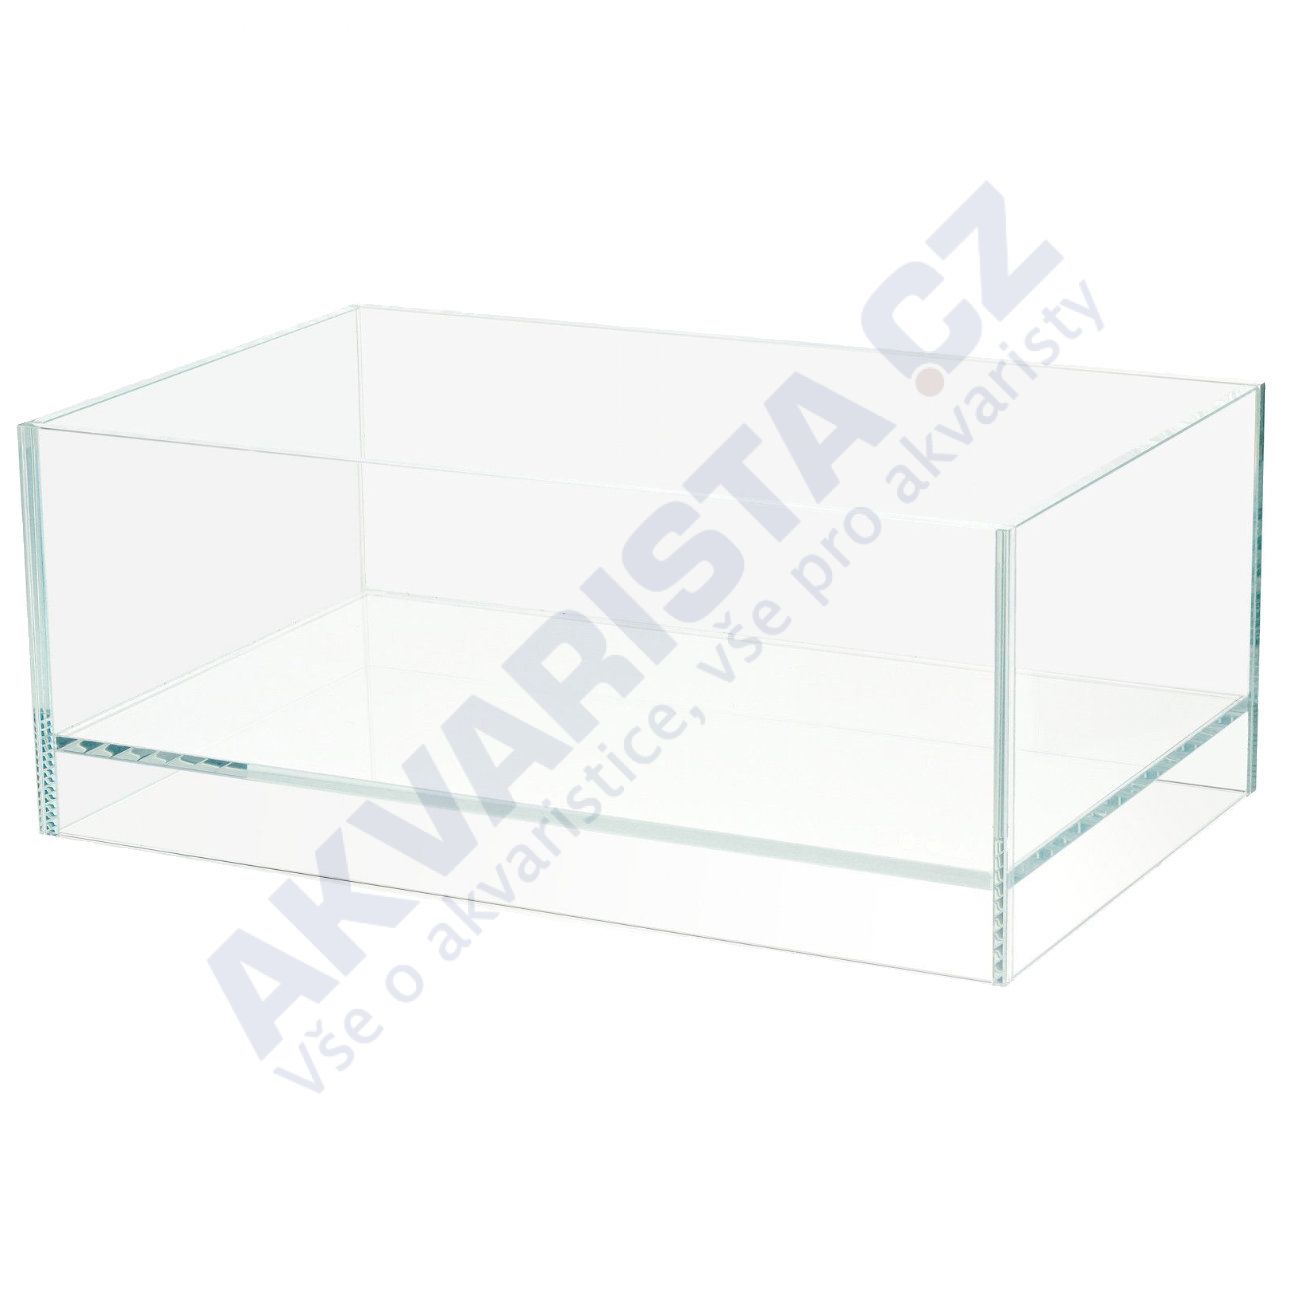 ADA DOOA Neo Glass AIR 30x18x12 cm